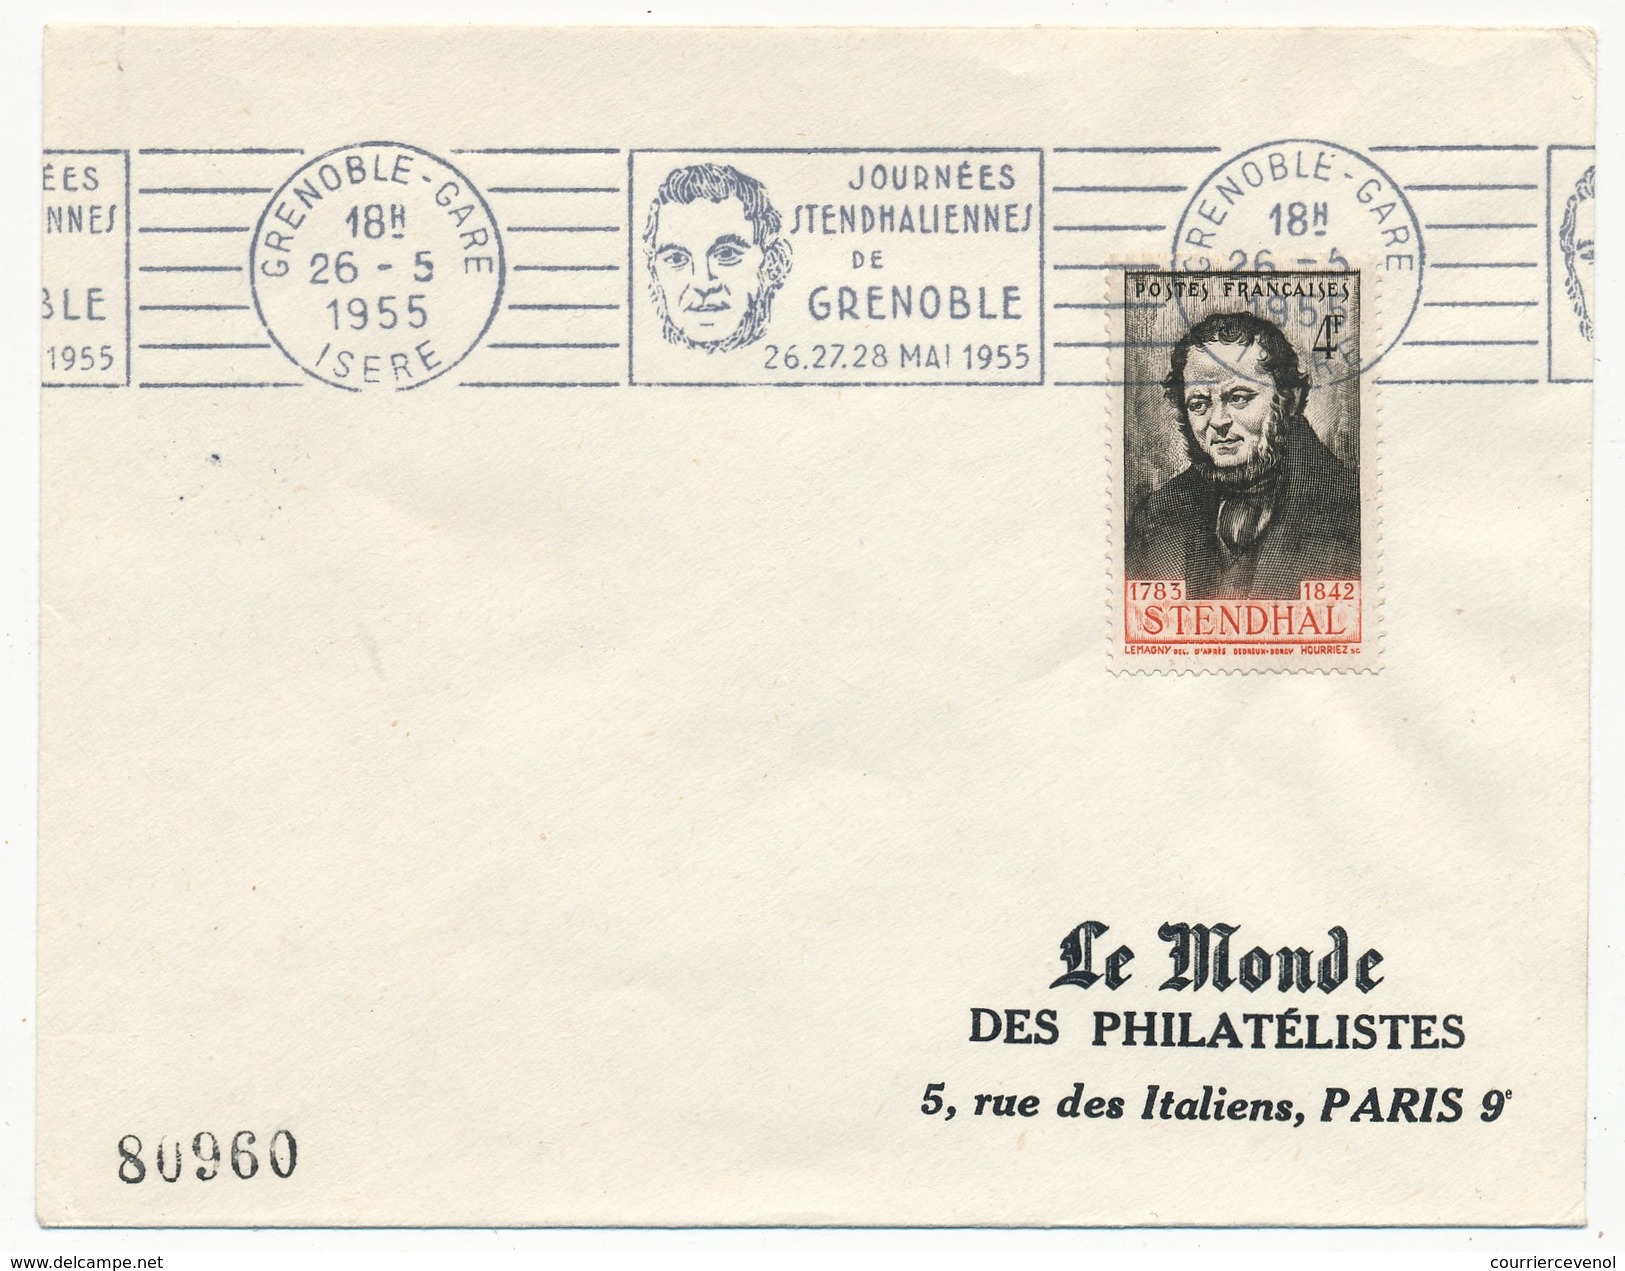 FRANCE - Enveloppe - OMEC "Journées Stendhaliennes" GRENOBLE 26 Mai 1955 - Schrijvers